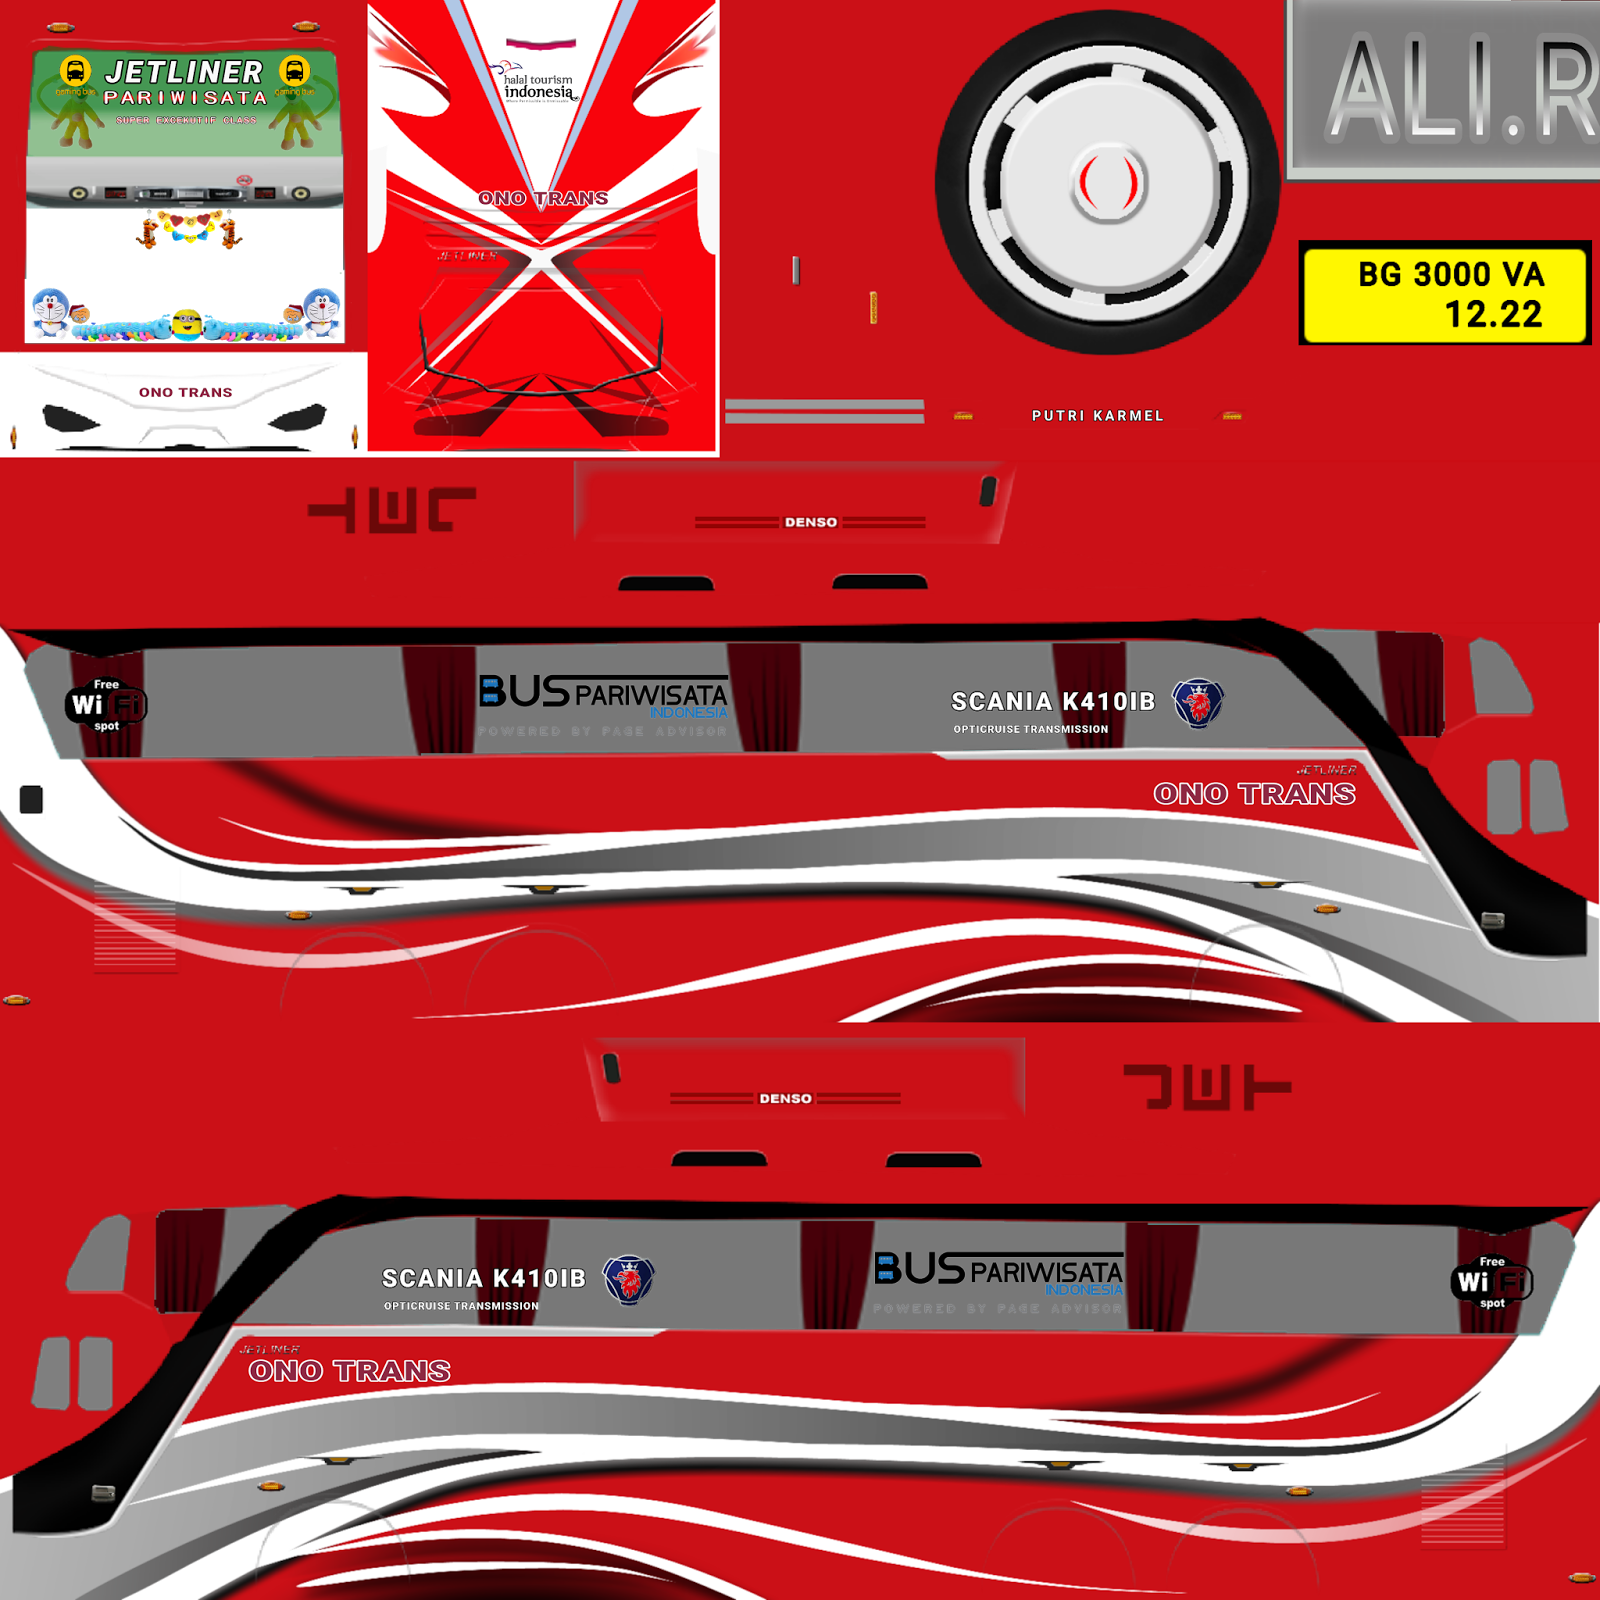   Download  Livery  Bus Simulator Jernih Terbaik Part 2 